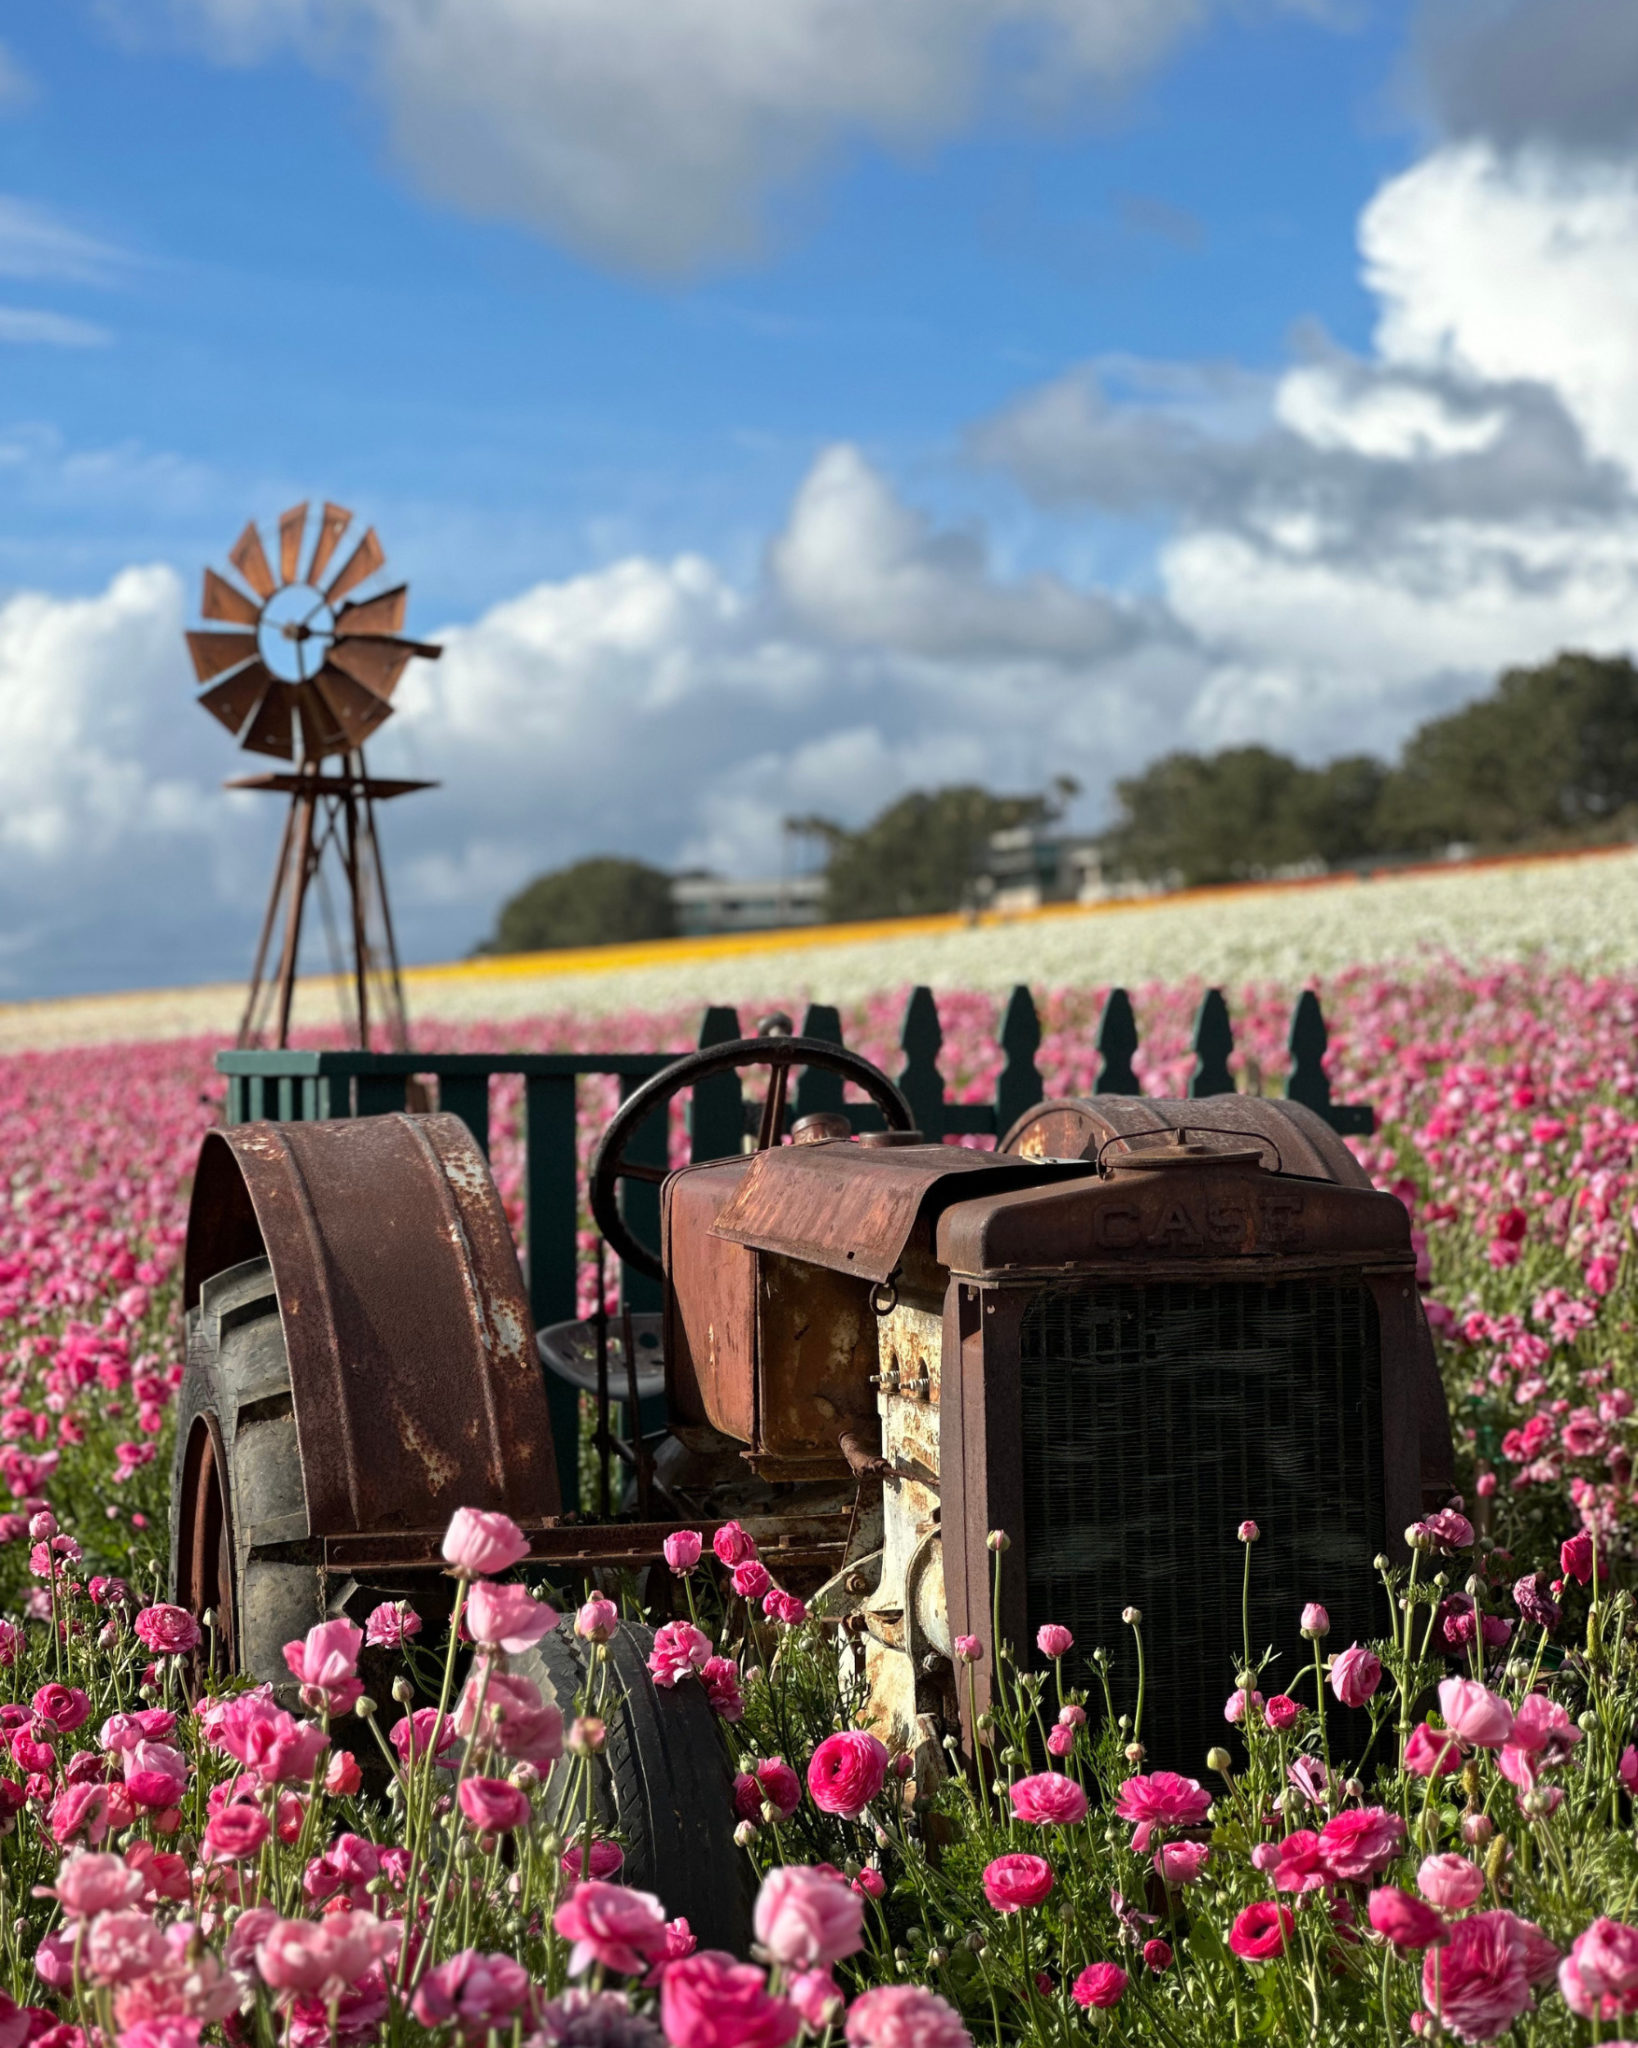 ¡La primavera ya está aquí! Viaja al sur de California y enamórate de los 55 acres de flores gigantes y de sus colores